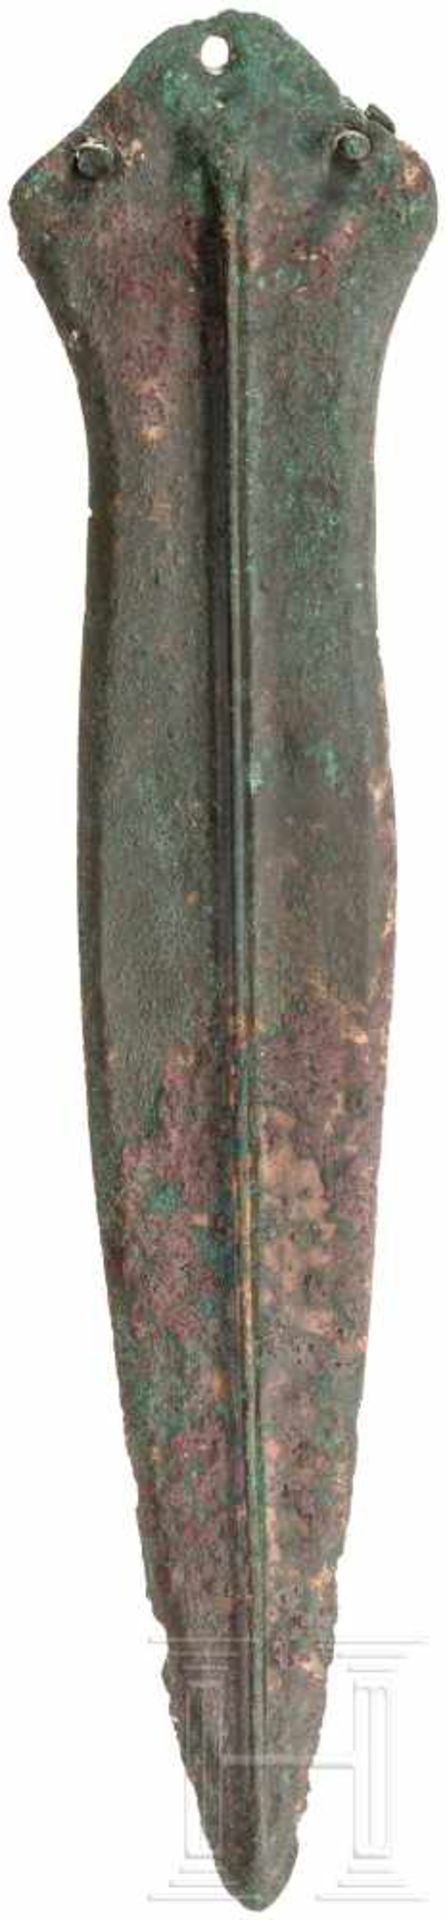 Klinge eines Kurzschwertes, Späte Bronzezeit, 12. - 10. Jhdt. v. Chr.Griffplattenkurzschwert mit - Bild 2 aus 2